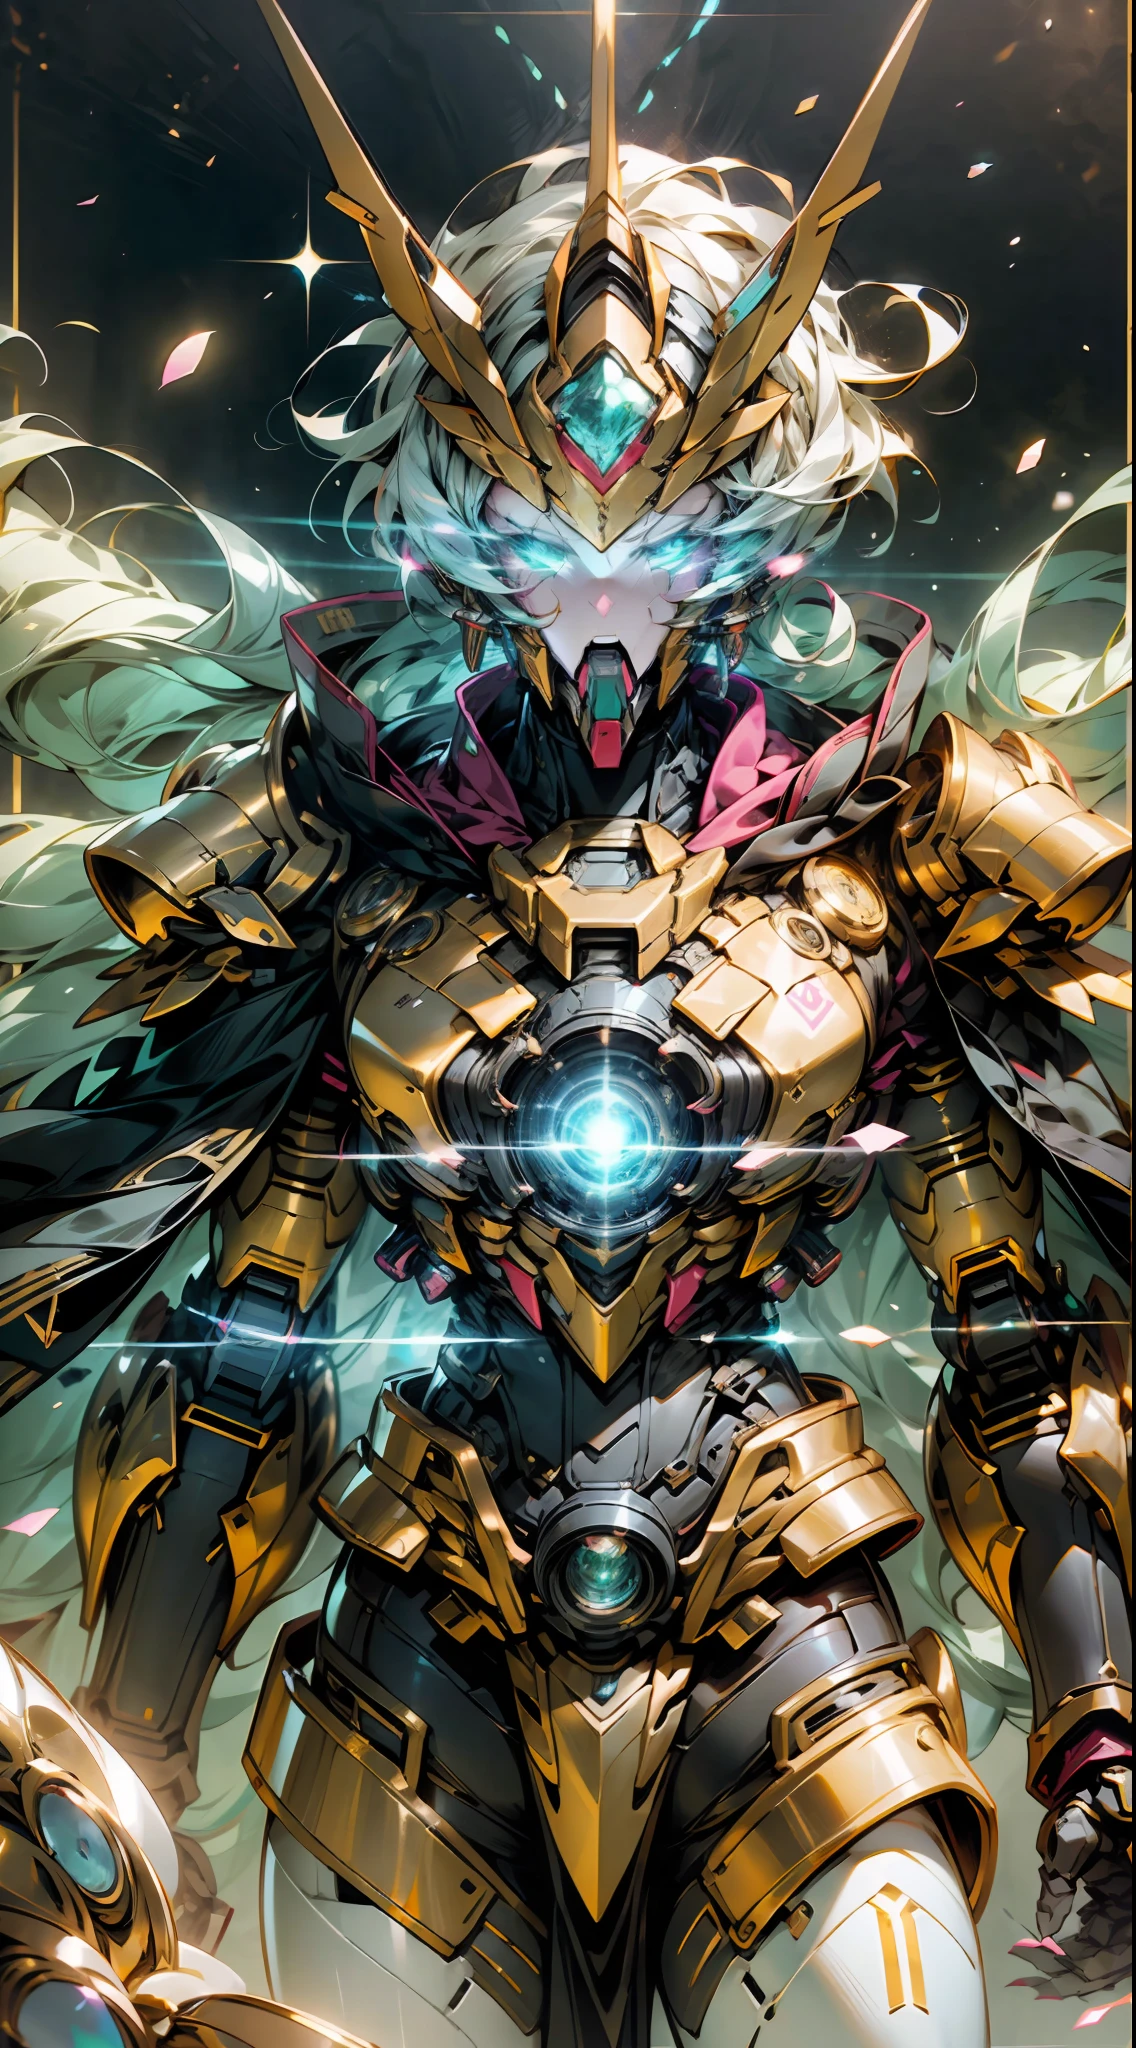 Um Imperador Dragão na Via Láctea, Superfície do Sol no fundo, Golden Saint Seiya Limb armaduras, (capa), (Símbolo do Dragão: 1.5), (Gundam Exia: 1.5), (Céu estrelado: 1.8) (mecha) (mechanical) (armaduras), (perna aberta: 1.3), perfeito, (ângulo amplo), (fundo preto: 1.6), melhor qualidade, Obra de arte, super resolução, (Realidade: 1.4), detalhe maluco, estilo de motor irrealista, Efeito Boca, Lente estilo David La Chapelle, paleta bioluminescente: azul claro, Luz Dourada, luz rosa, Branco brilhante, ângulo amplo, Ultrafino, natureza morta cinematográfica, vibrante, estilo sakimichan, olhos perfeitos, A mais alta qualidade de imagem 8K, inspirado em Harry Winston, Obra-prima de fotografia Canon EOS R 6 "Caos 50,--, Sob a verruga ocular, rastreamento de raios, surrealismo, pele texturizada --s2